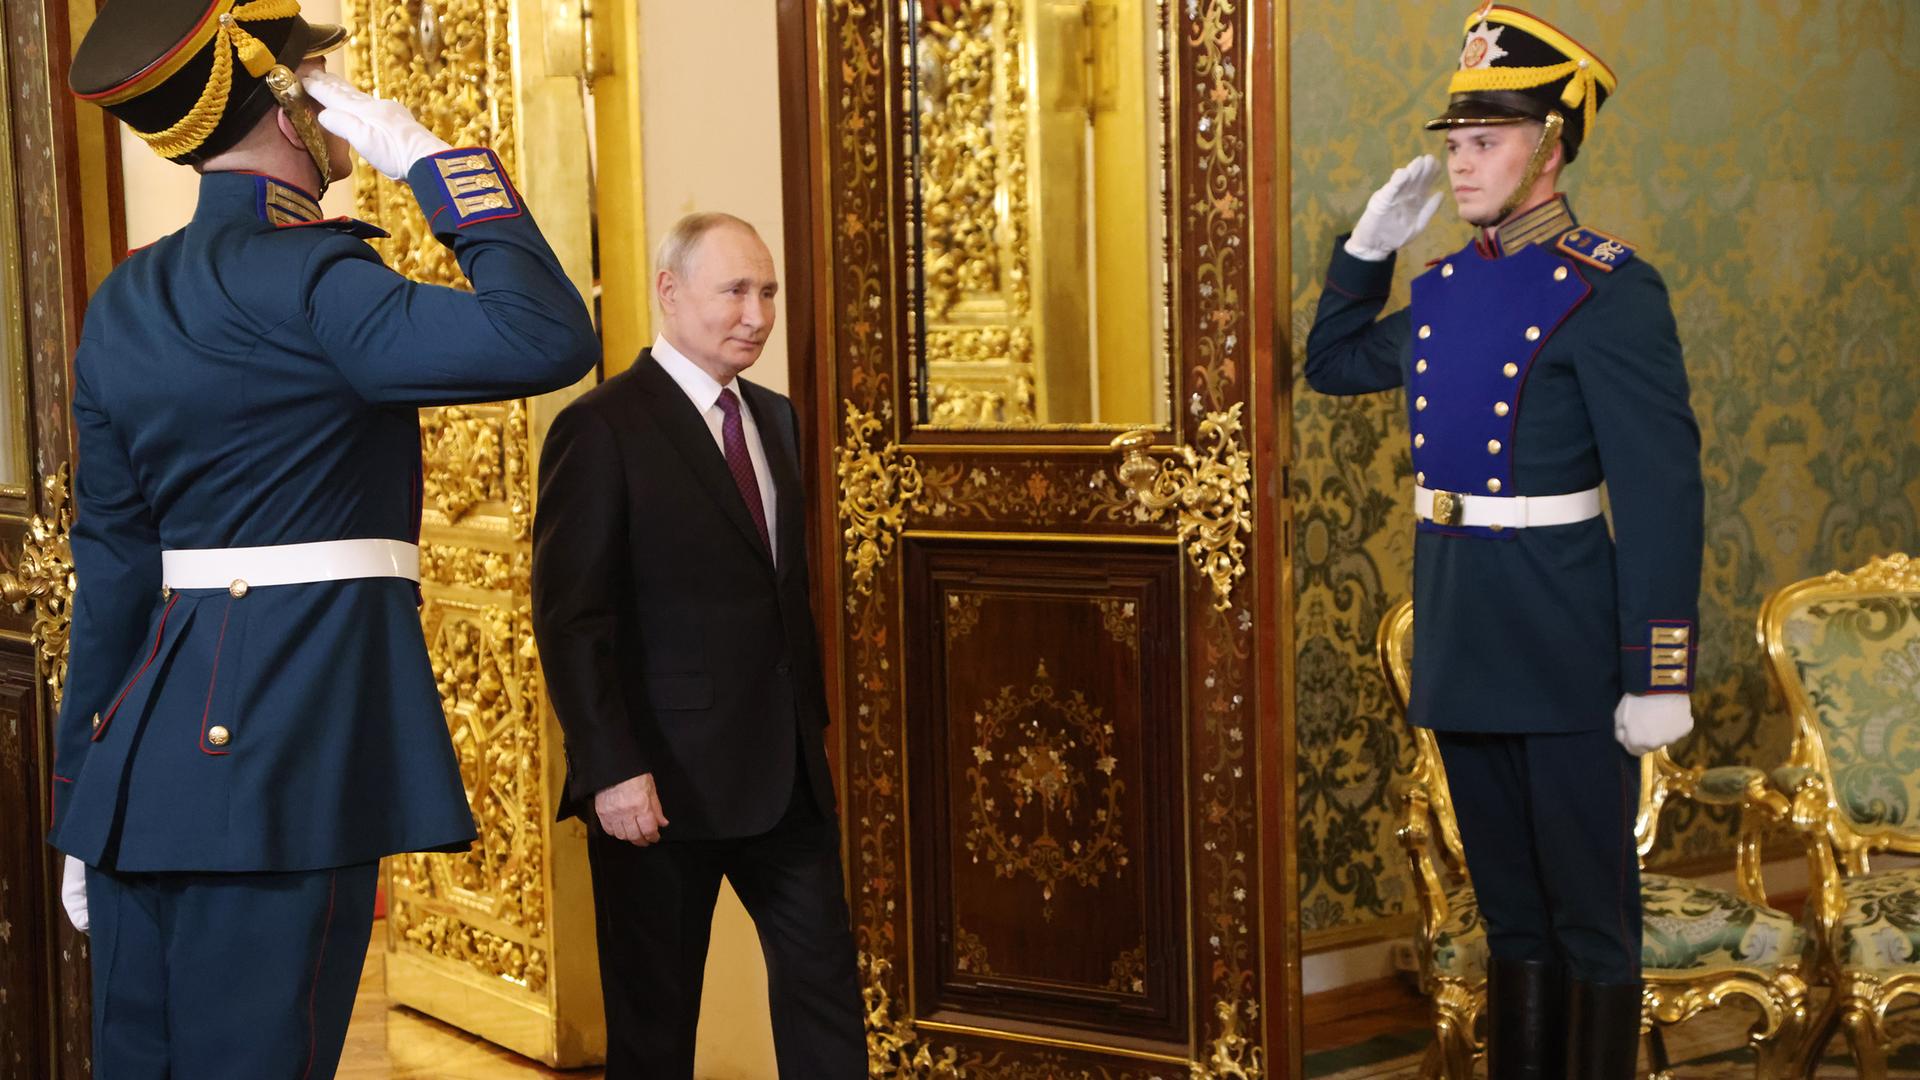 Der russische Präsident Wladimir Putin betritt einen Saal im Kremlpalast in Moskau, zwei Soldaten salutieren.